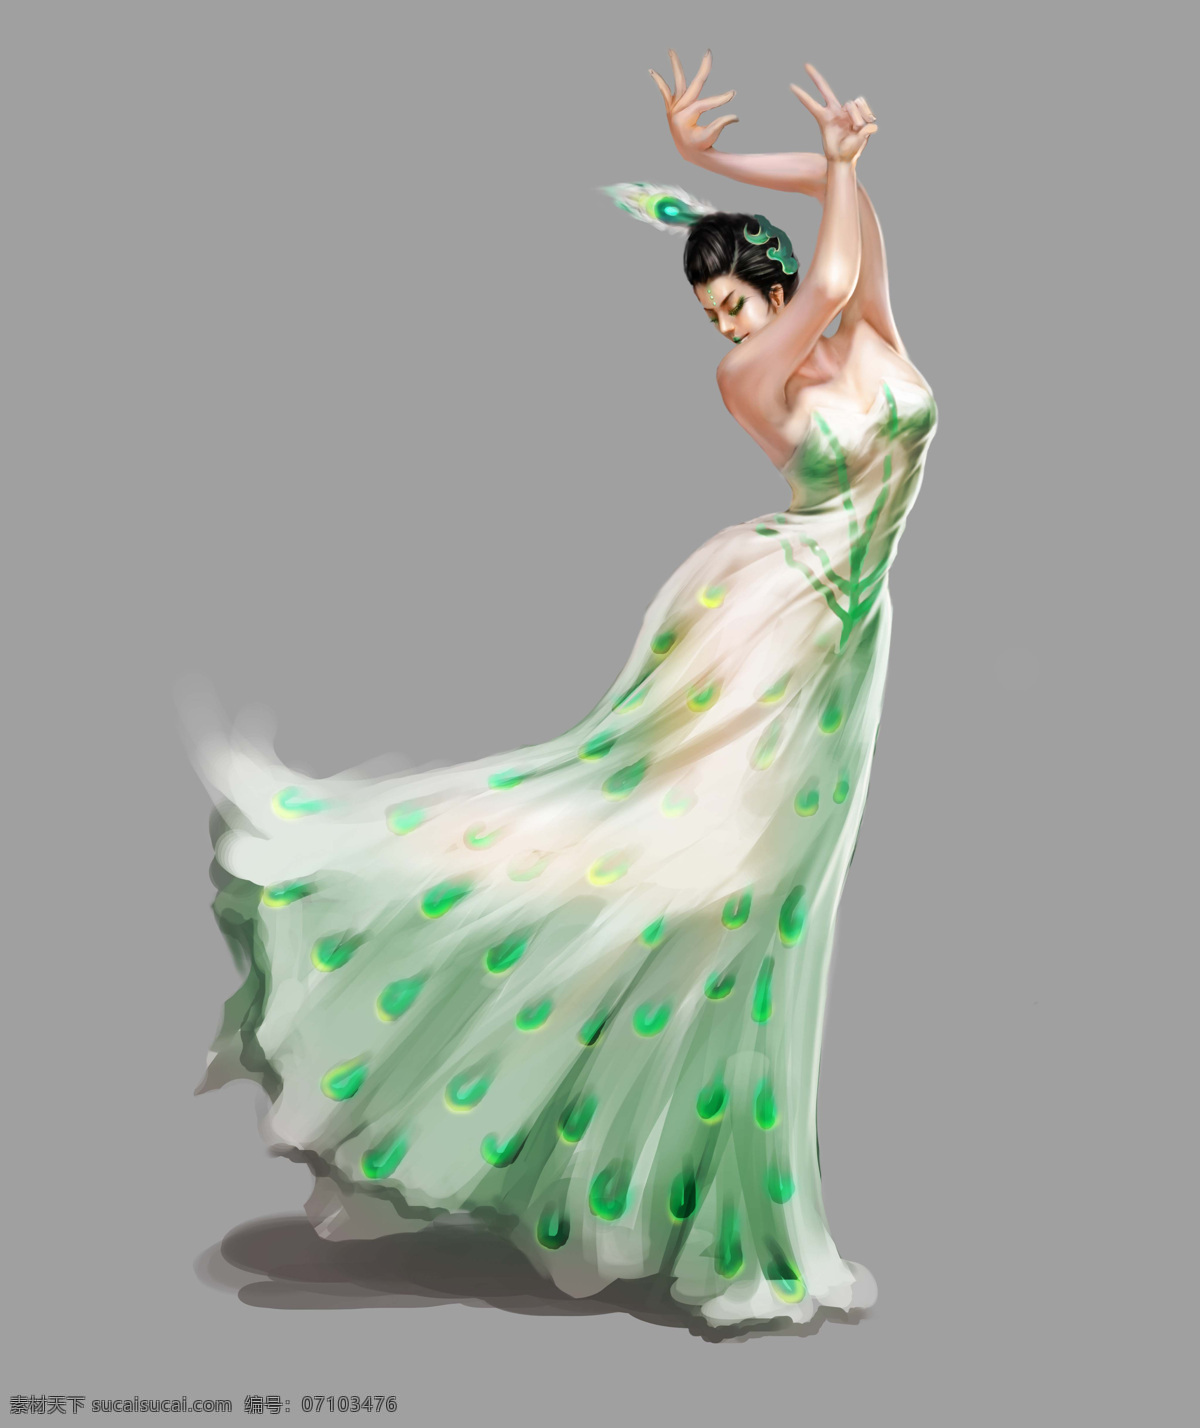 民族孔雀舞 民族 孔雀舞 跳舞 美女 油画 手绘 舞蹈 舞 优雅 舞台 孔雀 文化艺术 舞蹈音乐